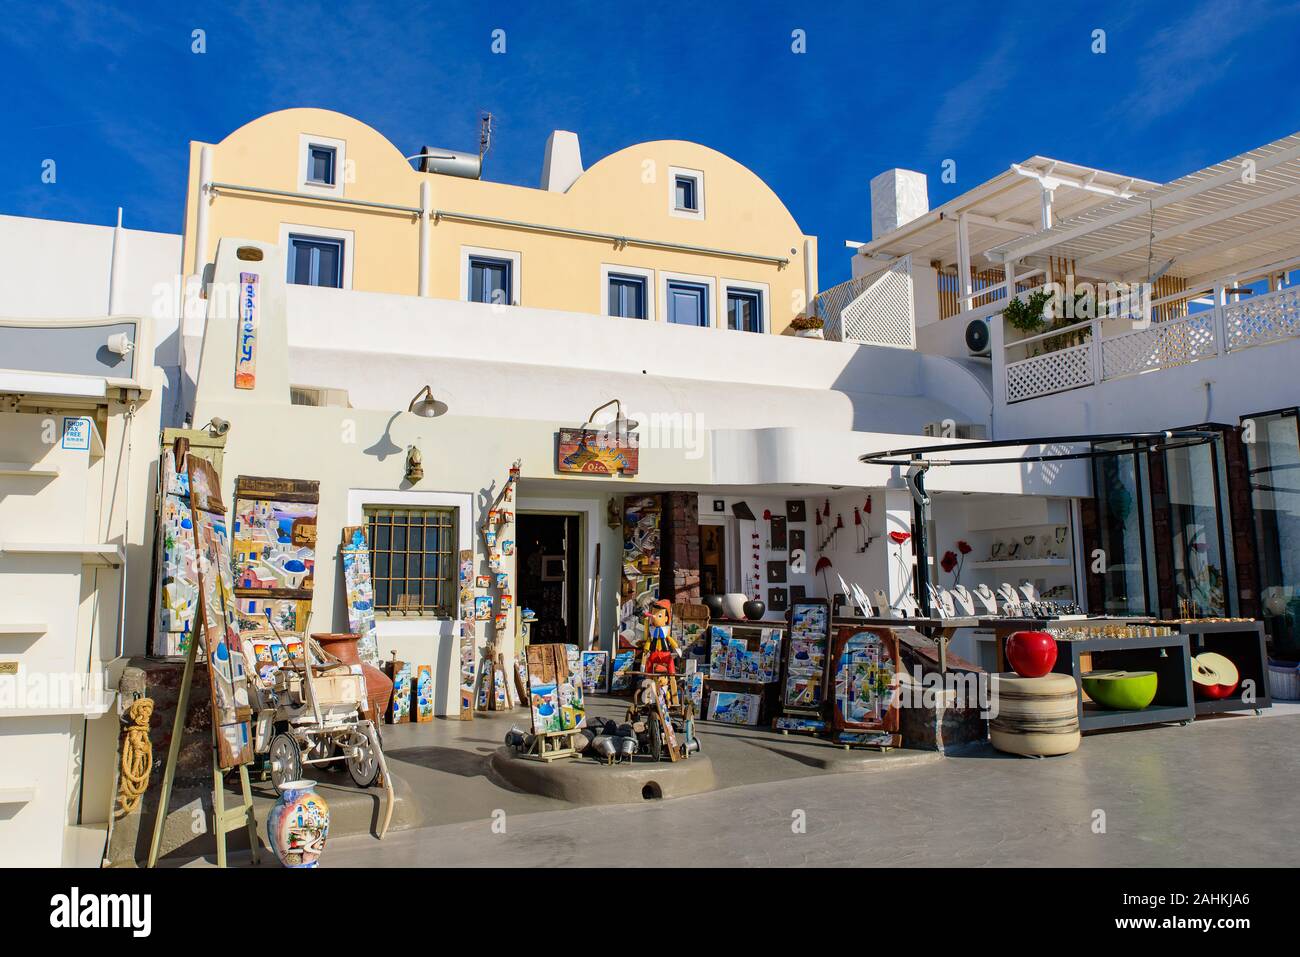 Souvenir shop in Oia, Santorini, Greece Stock Photo